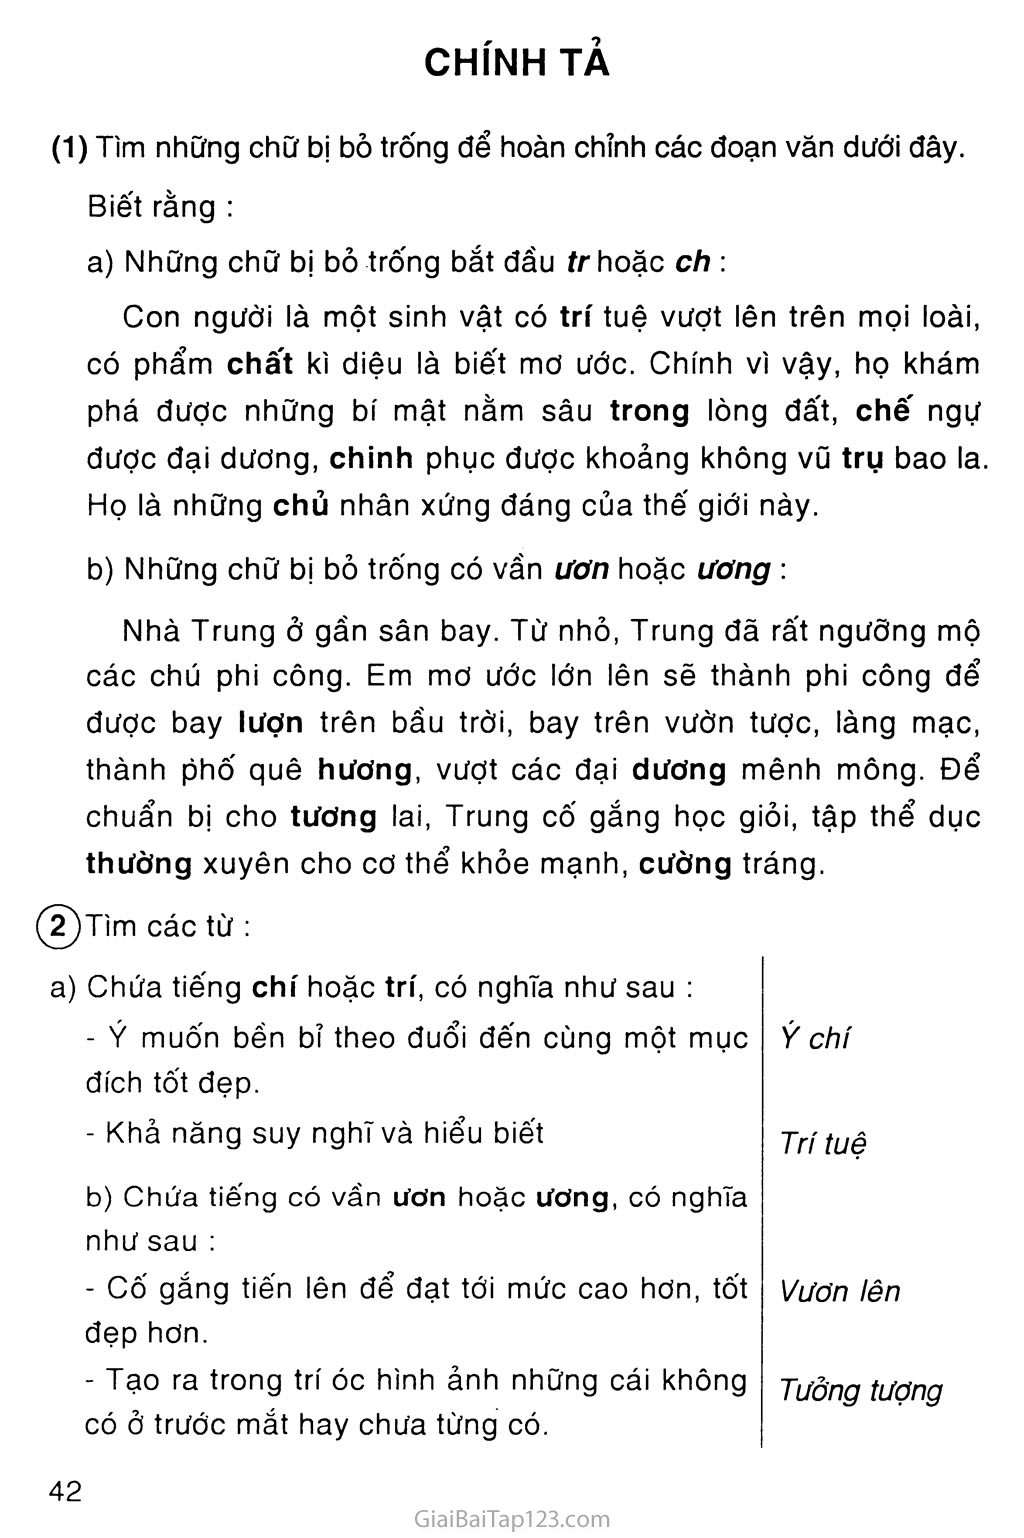 Tuần 7 Tiếng Việt: Bức tranh này liên quan đến chủ đề tiếng Việt trong tuần 7 của lớp học. Bức tranh sử dụng hình ảnh để giải thích các khái niệm về dấu chấm câu và cách chúng được sử dụng trong ngữ pháp tiếng Việt. Nếu bạn muốn cải thiện kỹ năng viết và ngữ pháp của mình, hãy xem bức tranh này để học cách sử dụng các dấu chấm câu nhé.